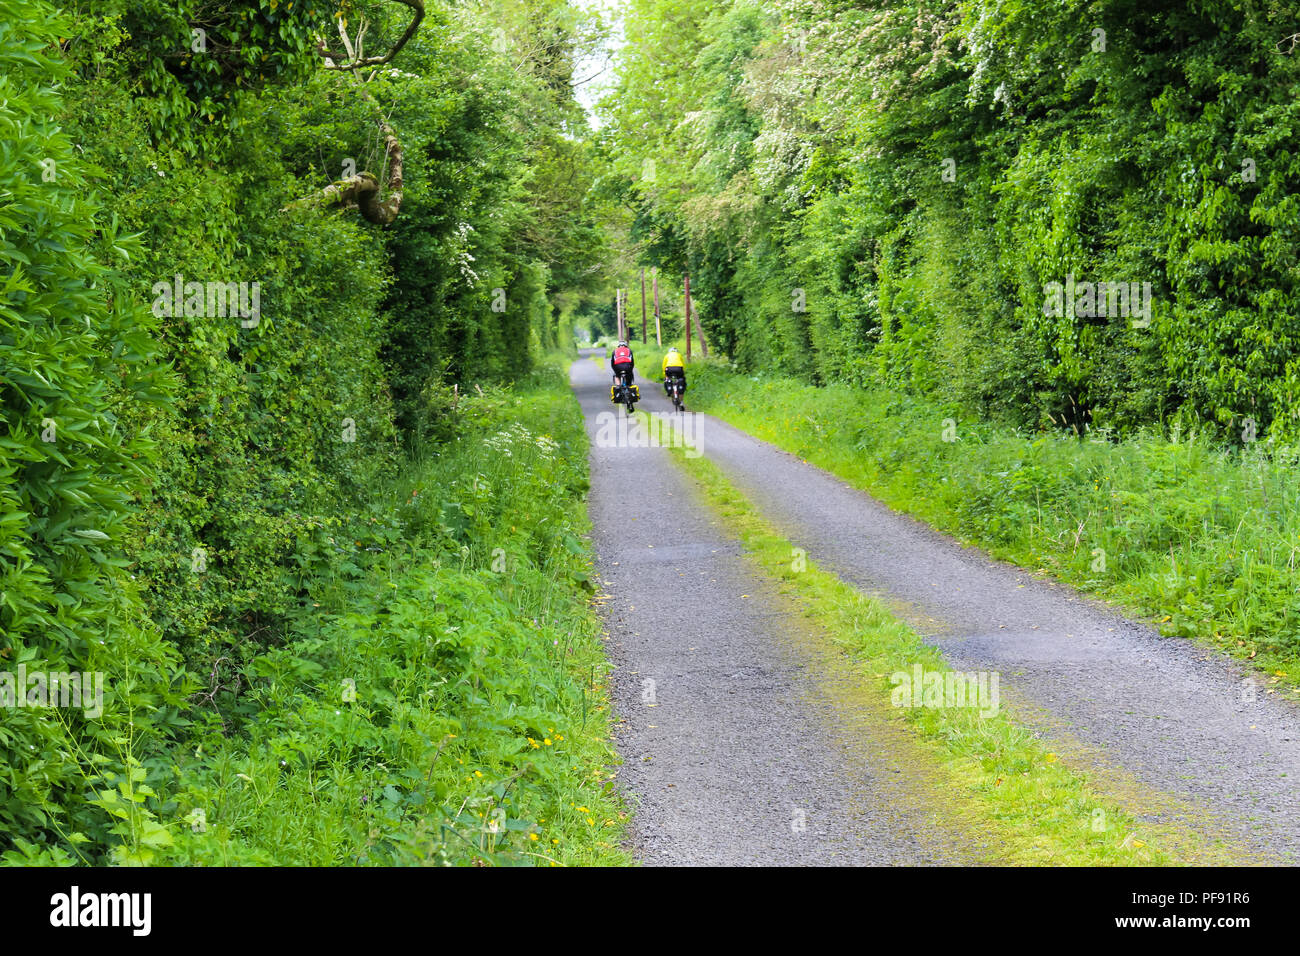 Zwei Radfahrer auf einer ruhigen Straße, mit Gras wächst in der Mitte, in der irischen Landschaft. Stockfoto